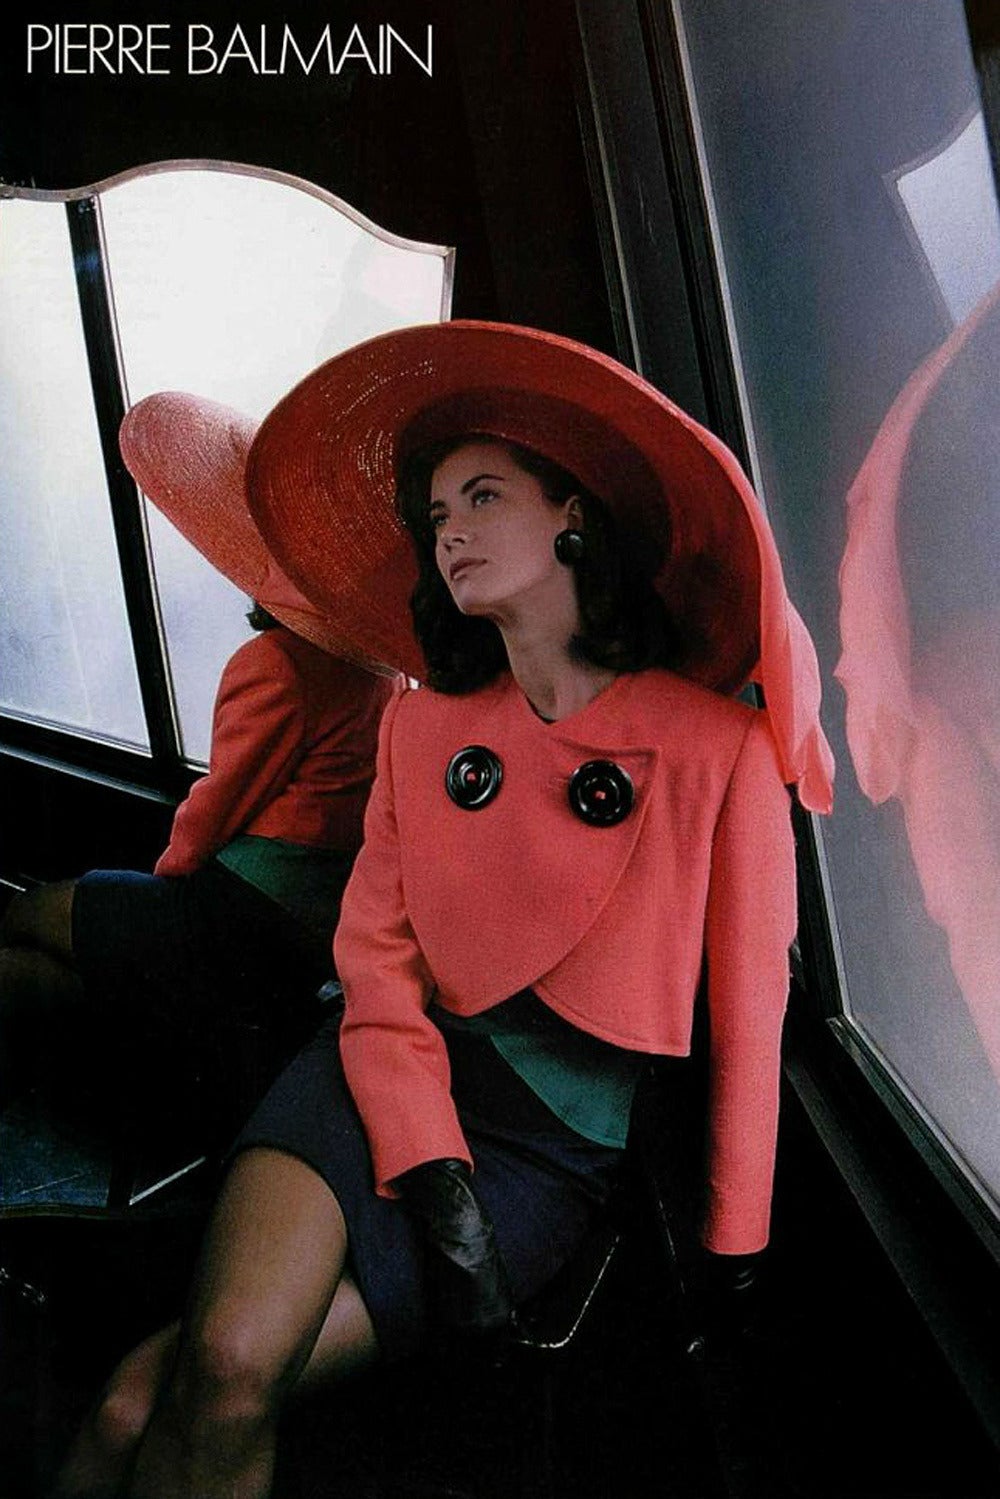 1989 Oscar de la Renta for Pierre Balmain Haute Couture Colorblocked Jacket For Sale 5